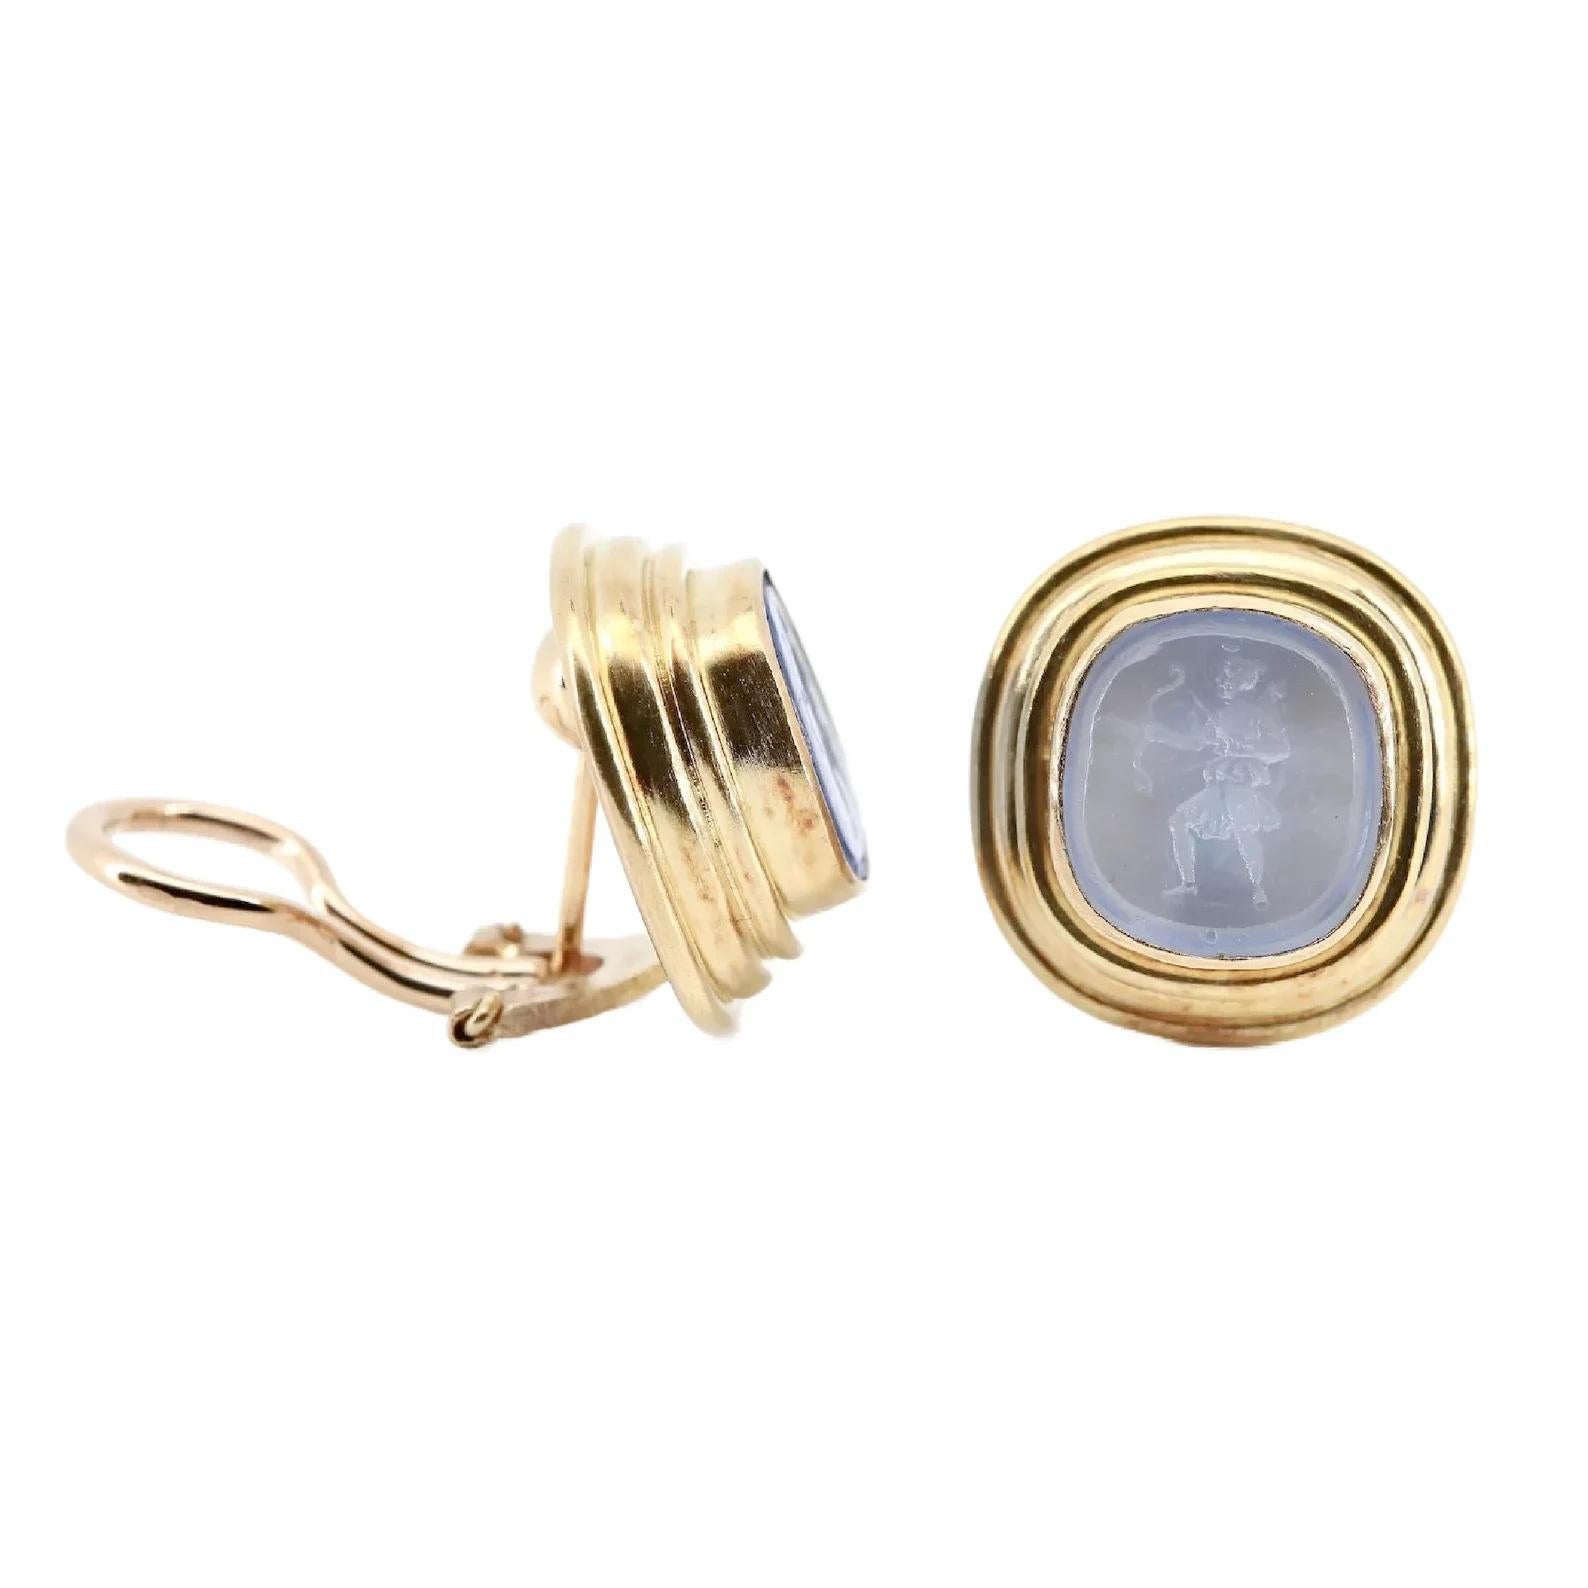 Ein Paar Elizabeth Locke Design-Ohrringe aus venezianischem Glas in Aquafarben. In der Mitte der Lünette befinden sich geschnitzte Bogenschützen, die in brüniertem 18-karätigem Gelbgold gefasst sind.

In ausgezeichnetem Zustand, messen diese